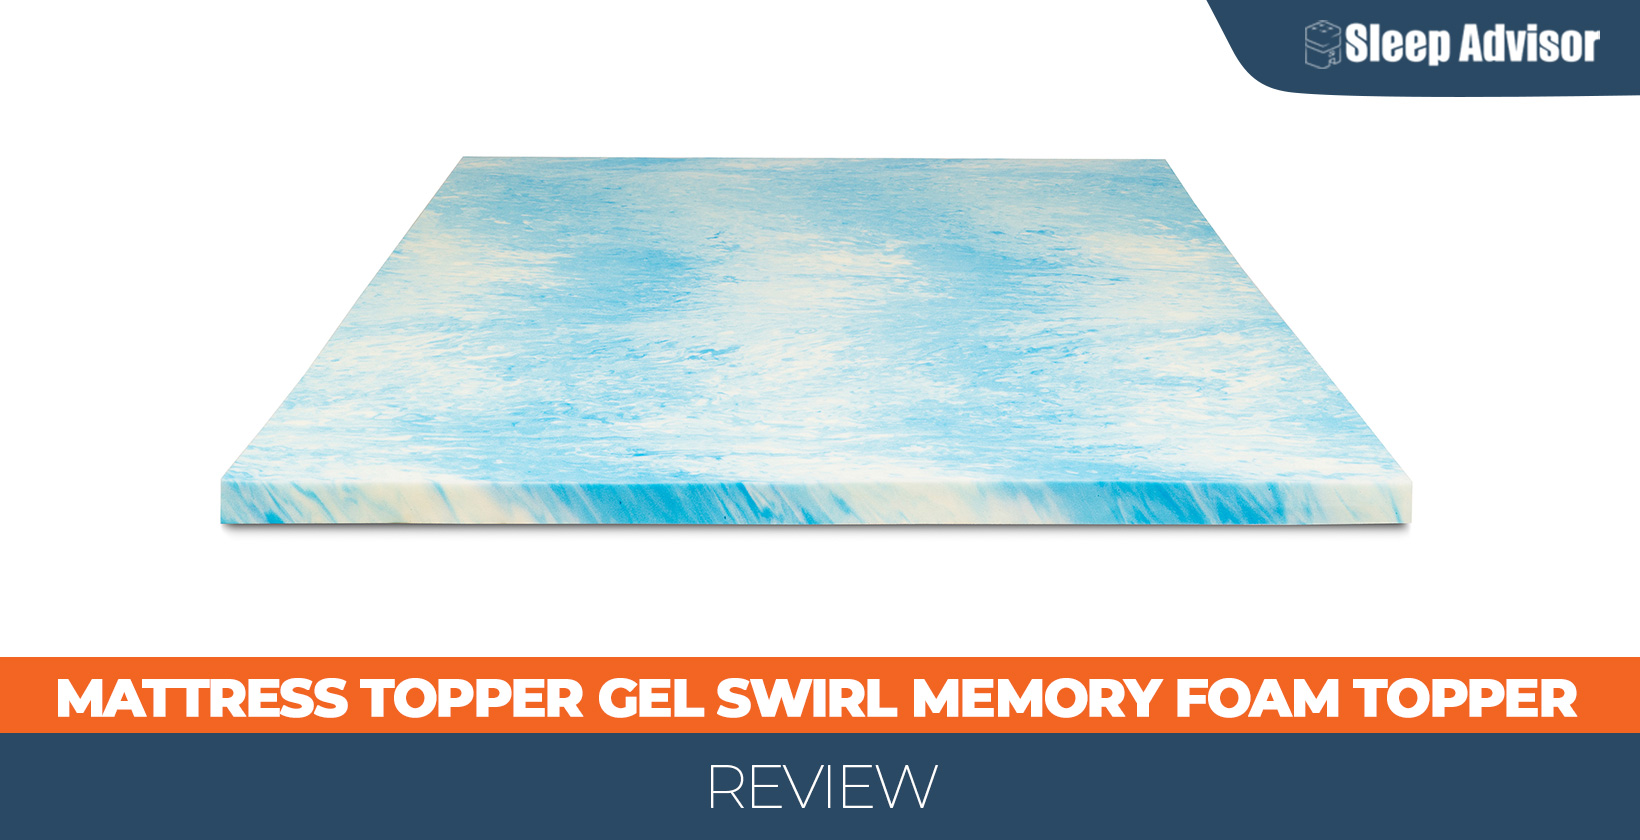 Our in depth Mattress Topper Gel Swirl Memory Foam Topper